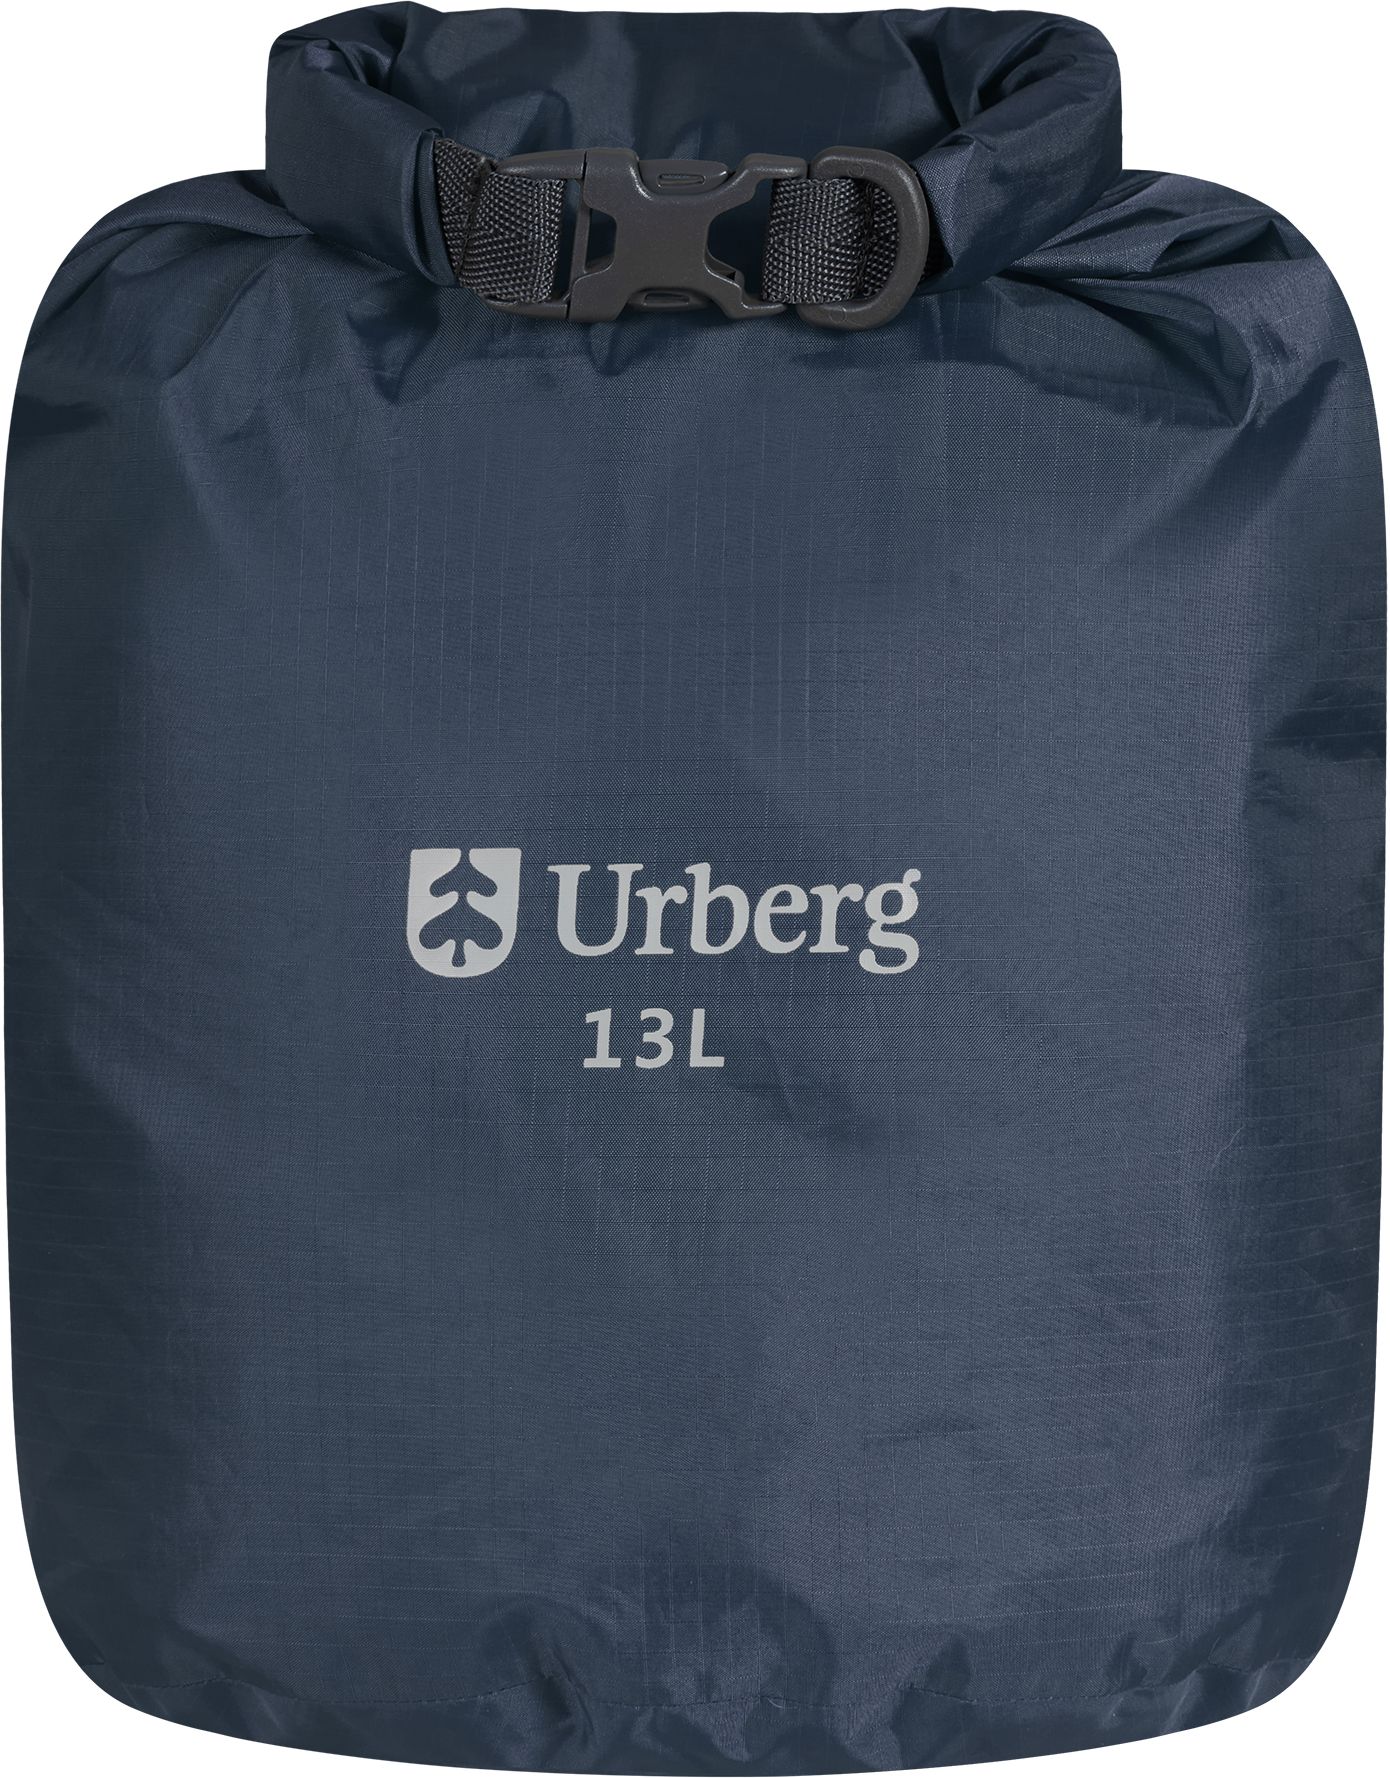 Urberg Dry Bag 13 L Midnight Navy